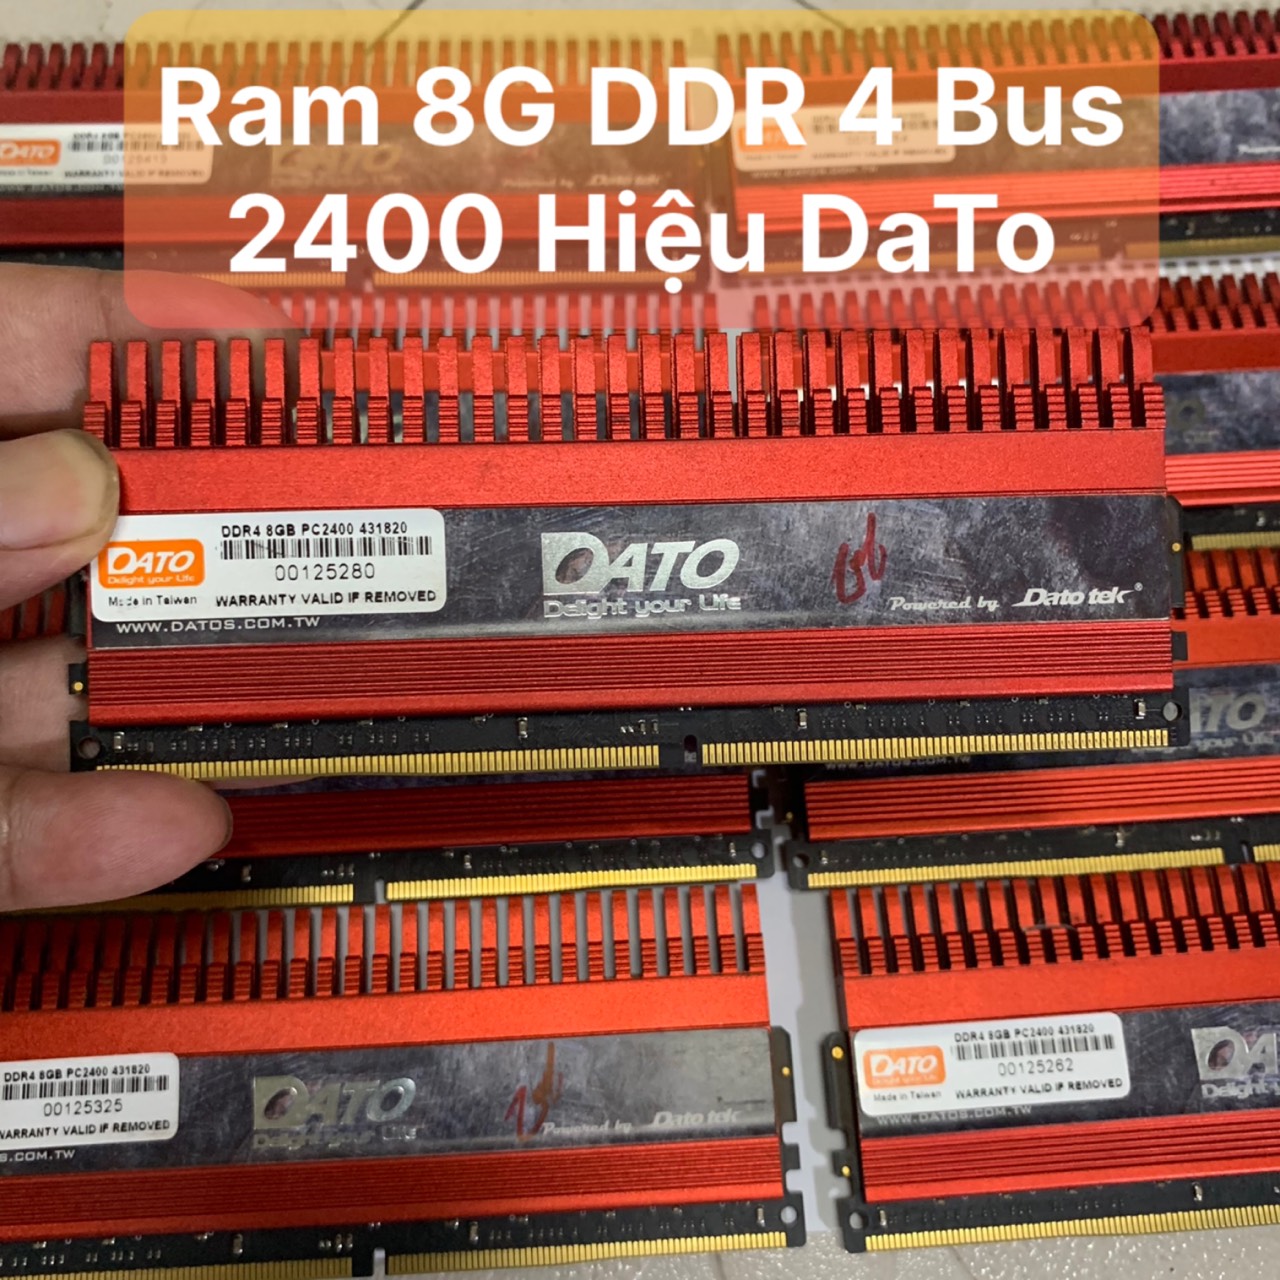 [HCM]Ram 8G - DDR4 - Bus 2400 Hiệu Dato Tản Nhiệt Thép Tản To Màu Đỏ - Vi Tính Bắc Hải